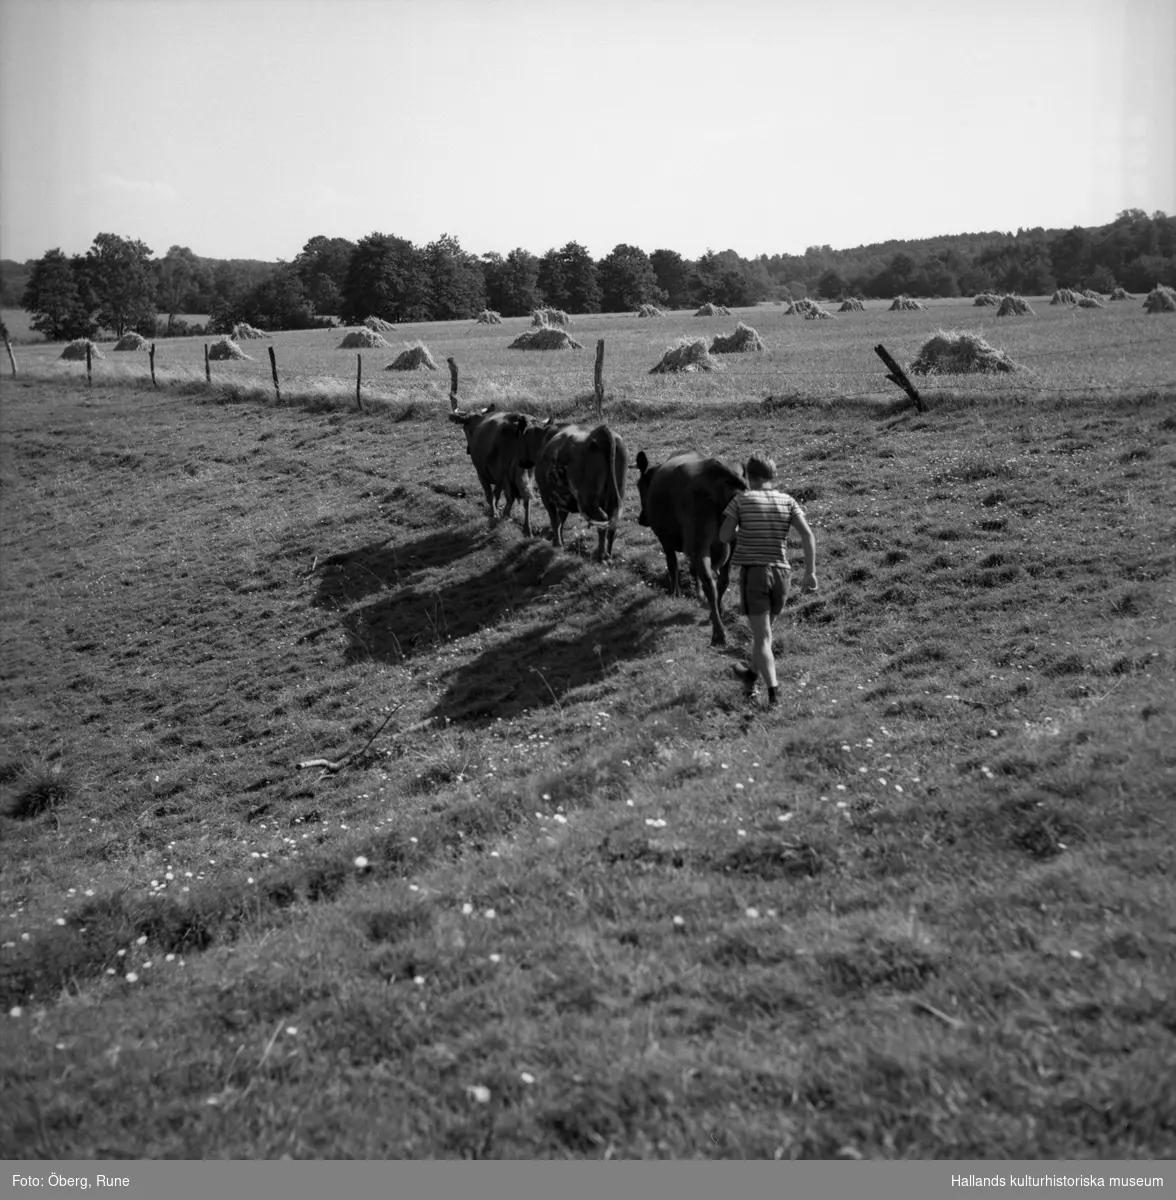 En man, sommargäst, driver ut korna på bete efter morgonmjölkningen. På fältet i bakgrunden syns trävar med säd.